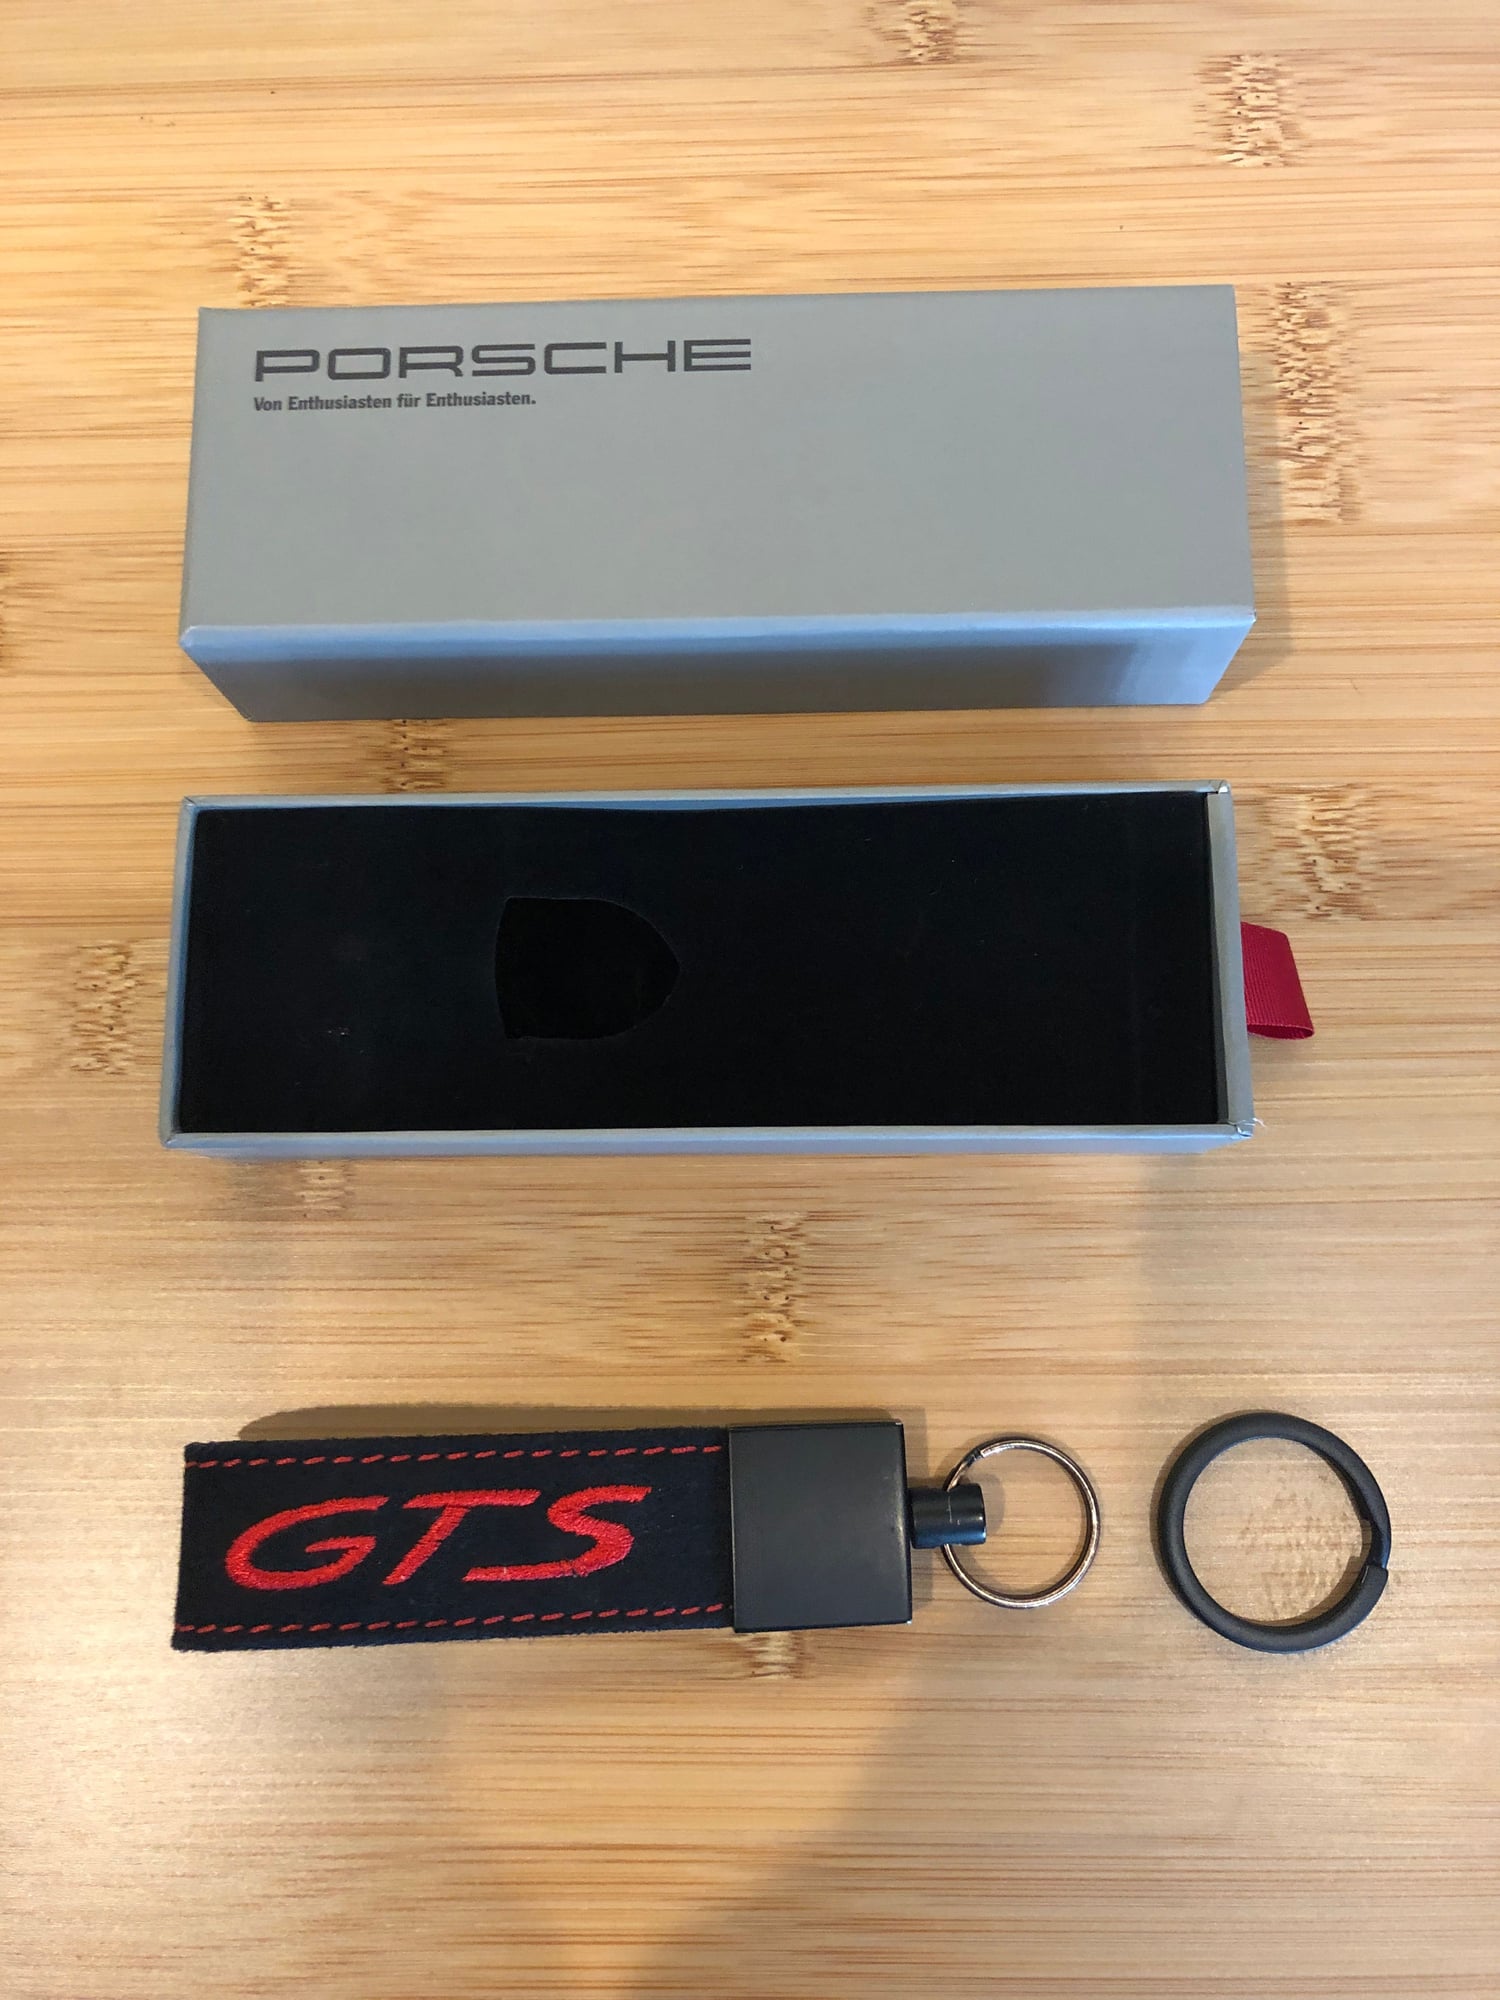 2000 Porsche 911 - GTS alcantara keychain - Accessories - $50 - Seattle, WA 98103, United States